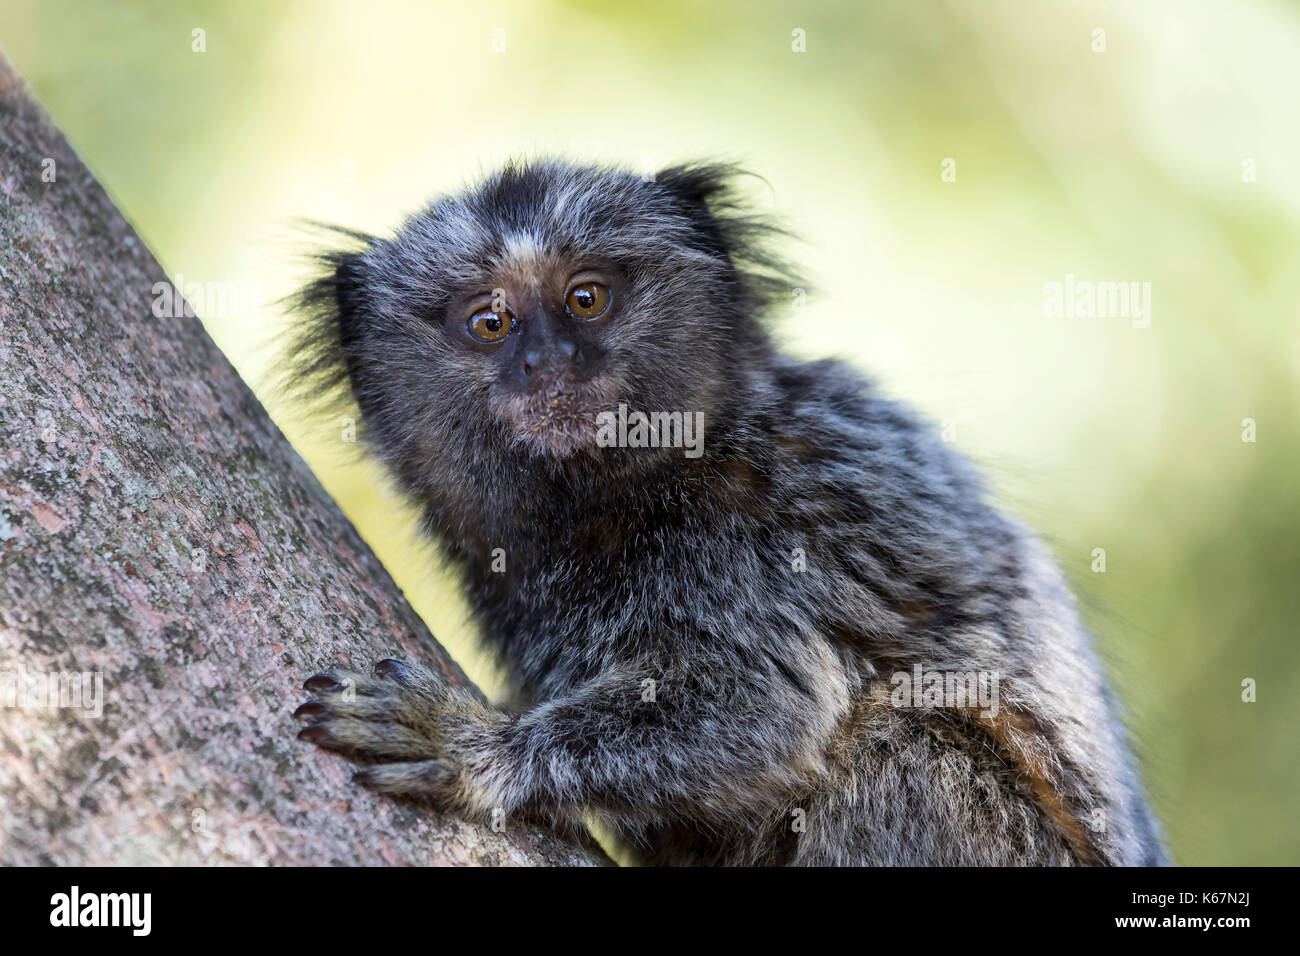 Macaco De Sagui Ou De Sagui Imagem de Stock - Imagem de brasil,  naturalizado: 146655377